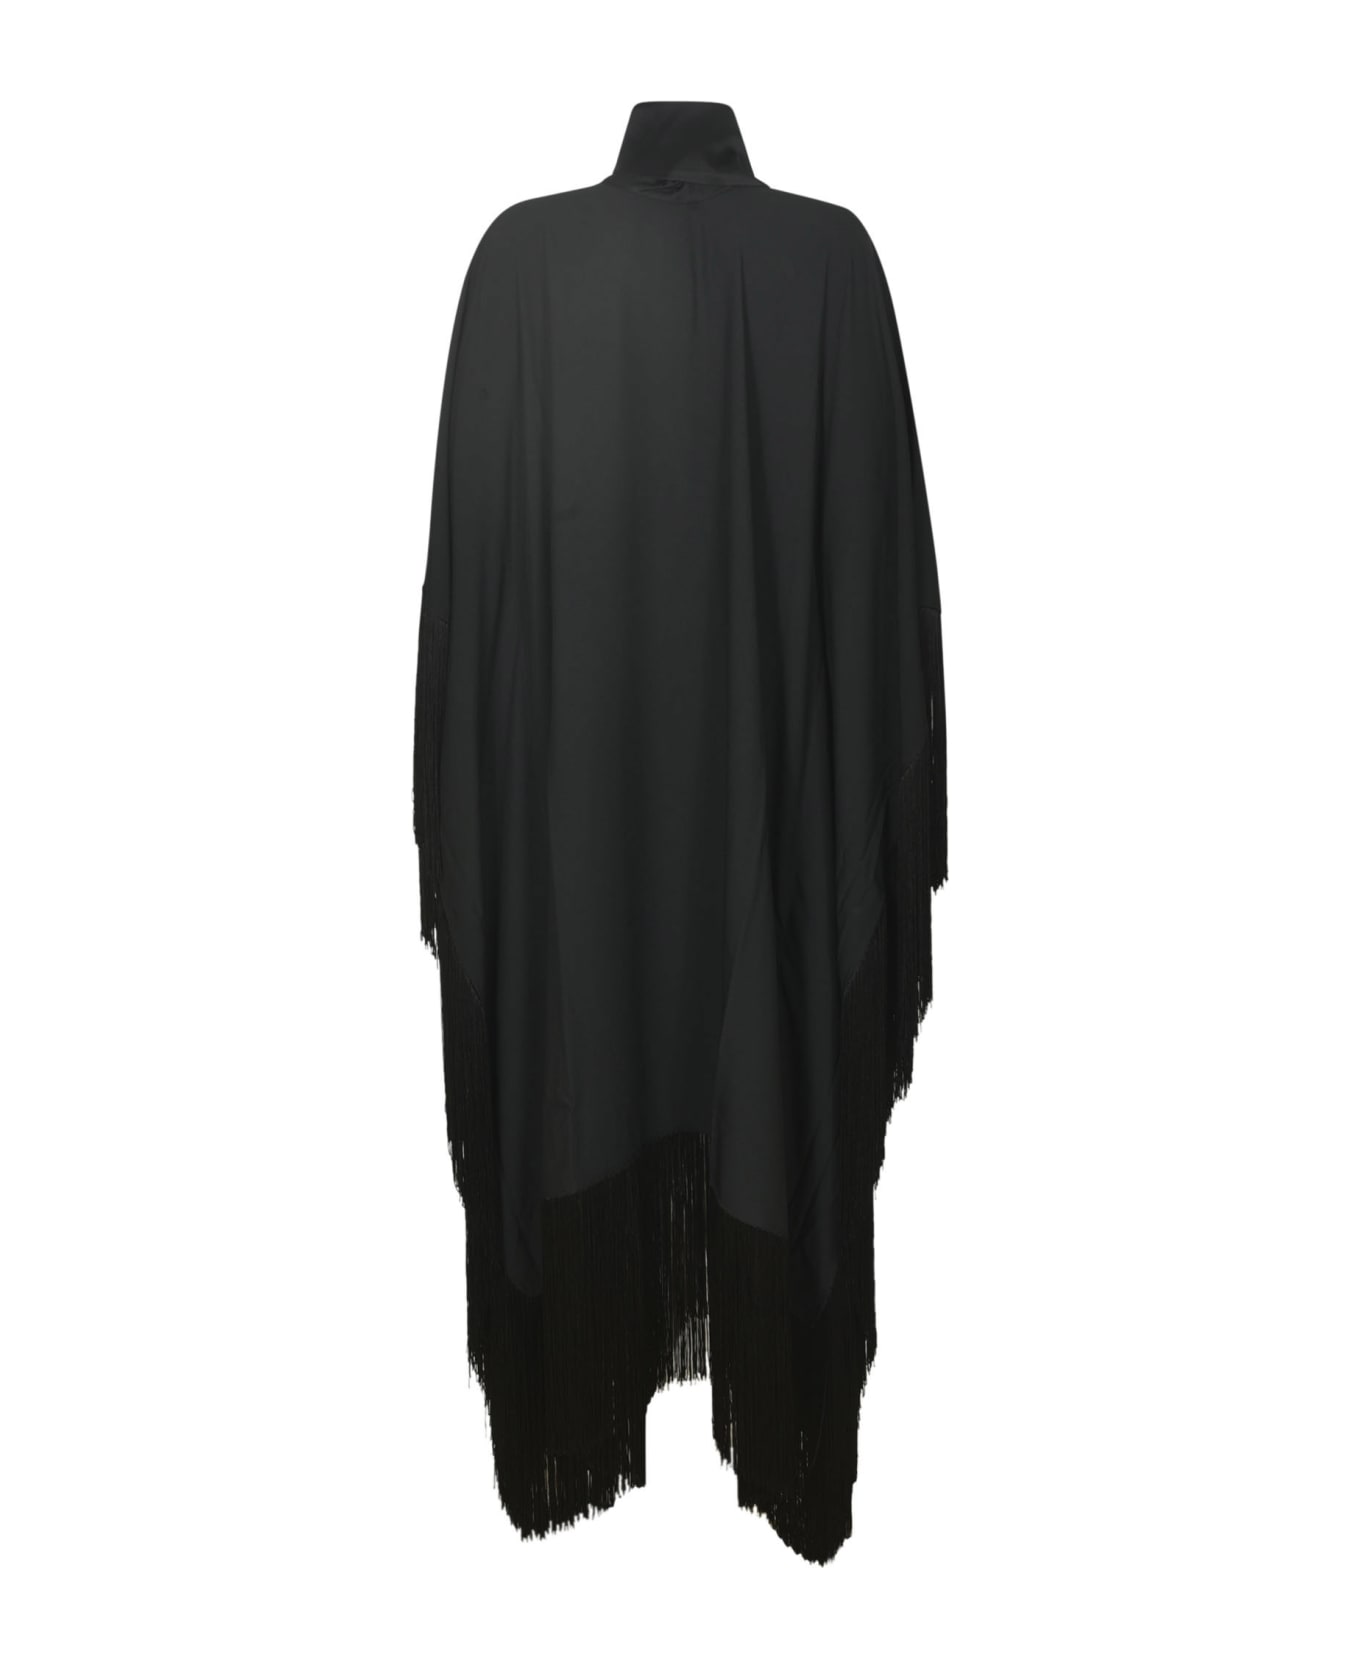 Taller Marmo Mrs. Ross Viscose Blend Dress - Black